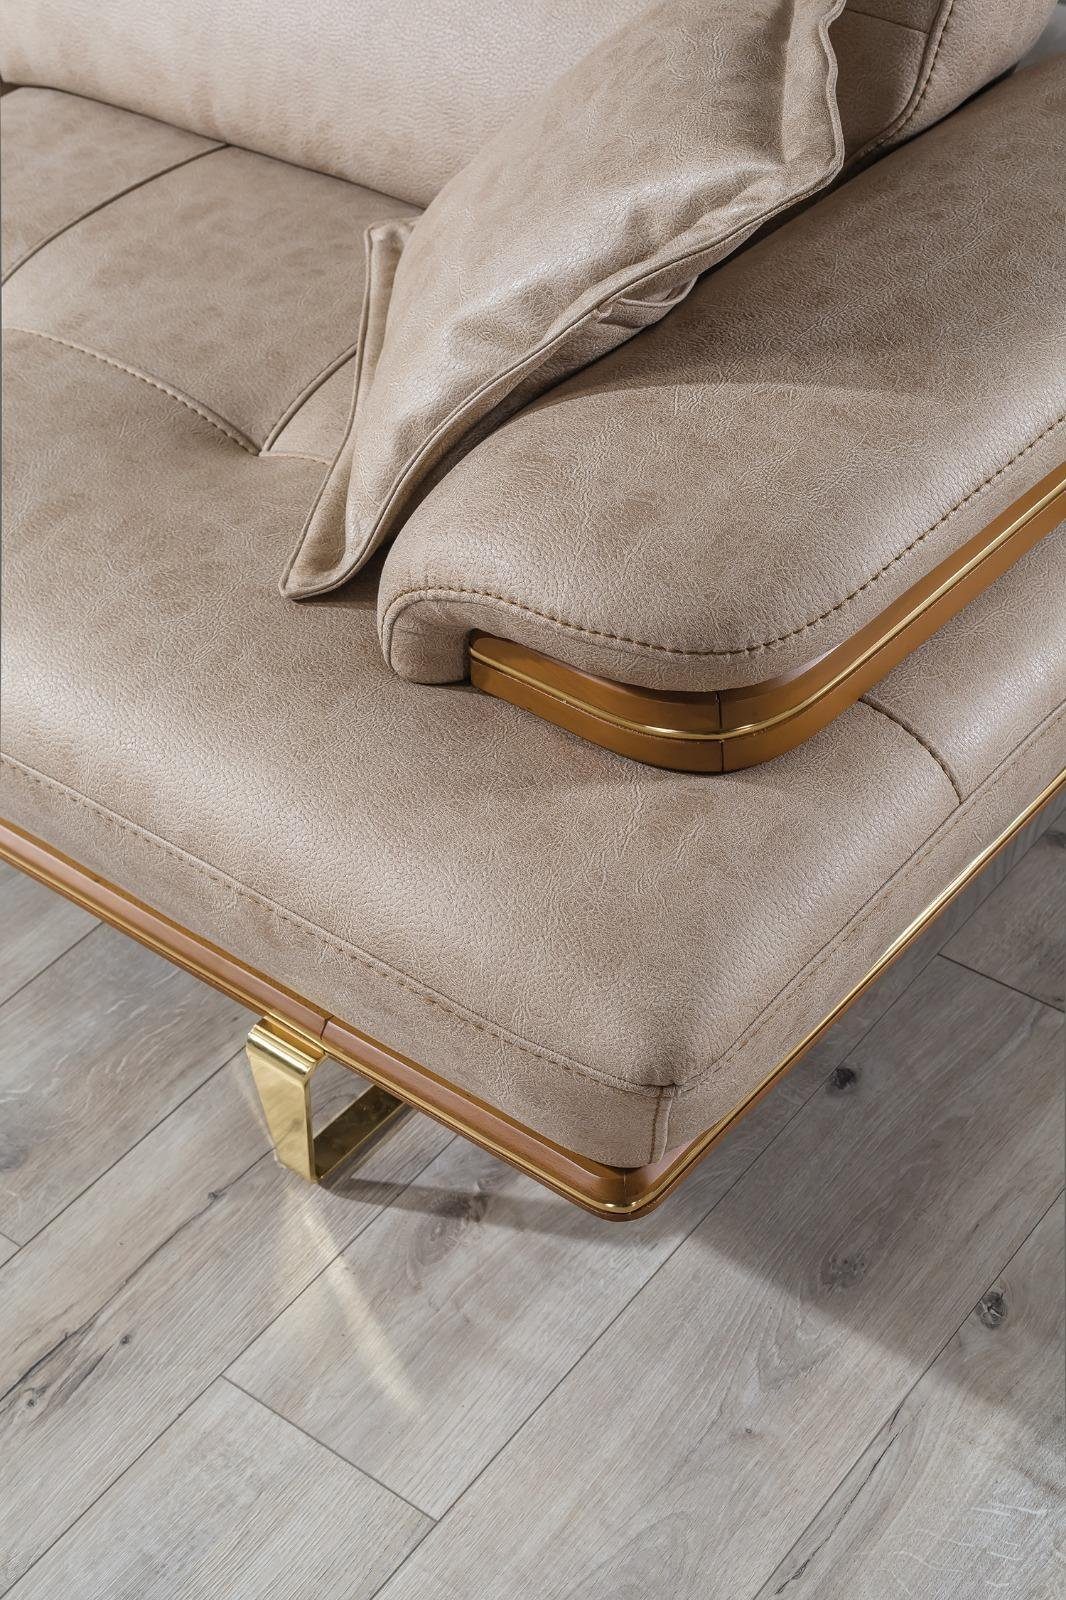 JVmoebel Sofa Sofa 1 Dreisitzer Luxus Beige Neu, in Teile, Möbel Polster Couch Made Design Europa Moderne